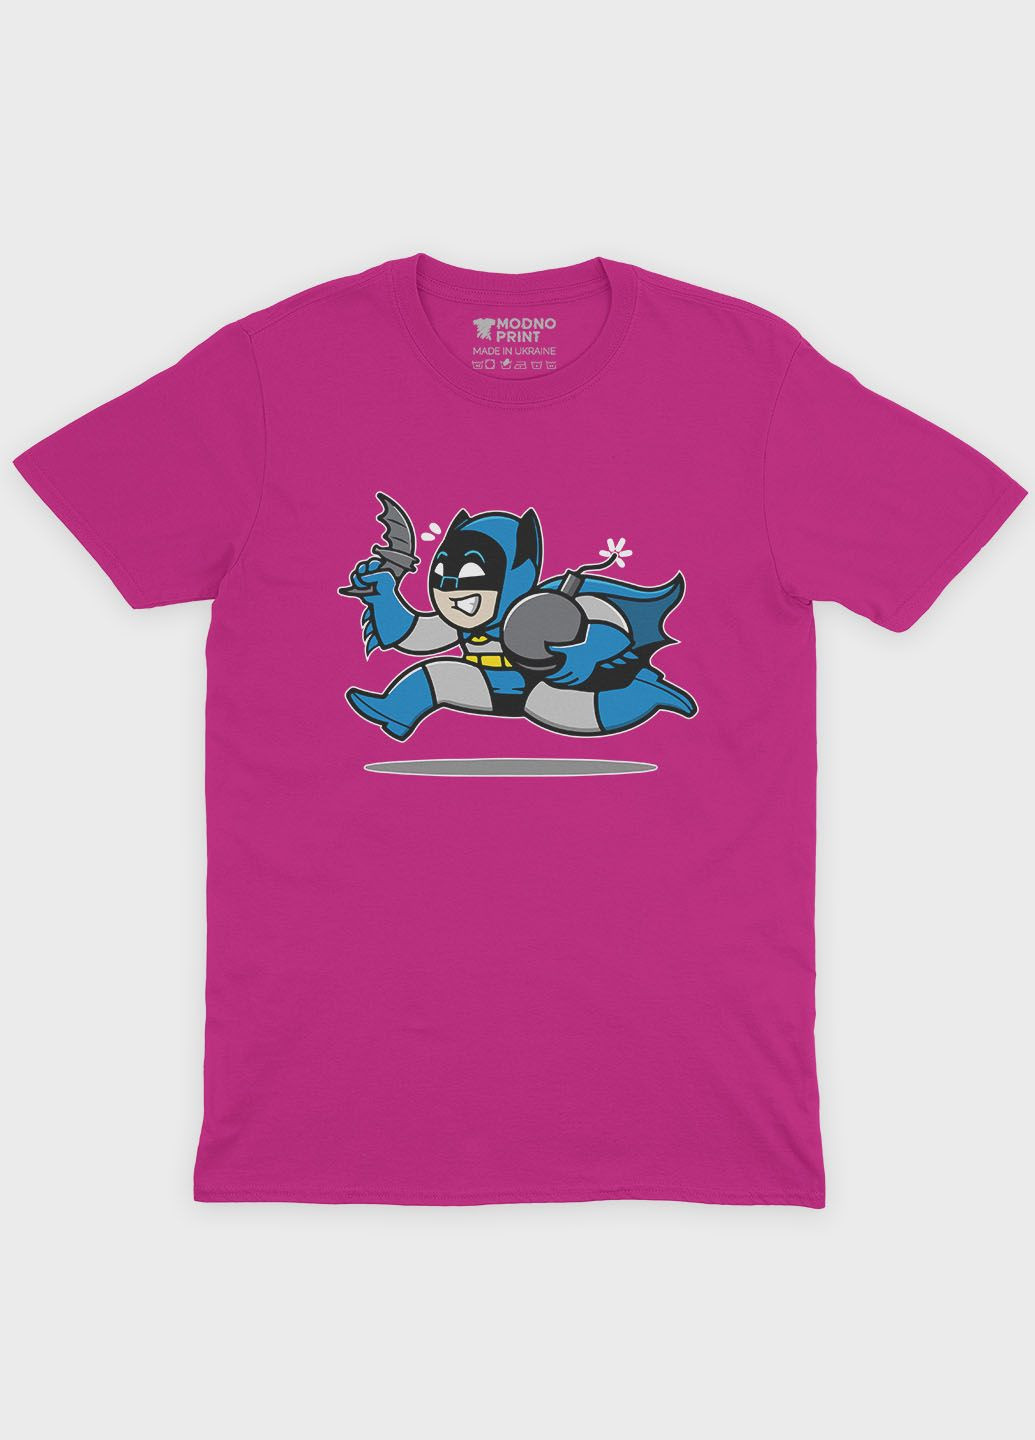 Розовая демисезонная футболка для девочки с принтом супергероя - бэтмен (ts001-1-fuxj-006-003-033-g) Modno